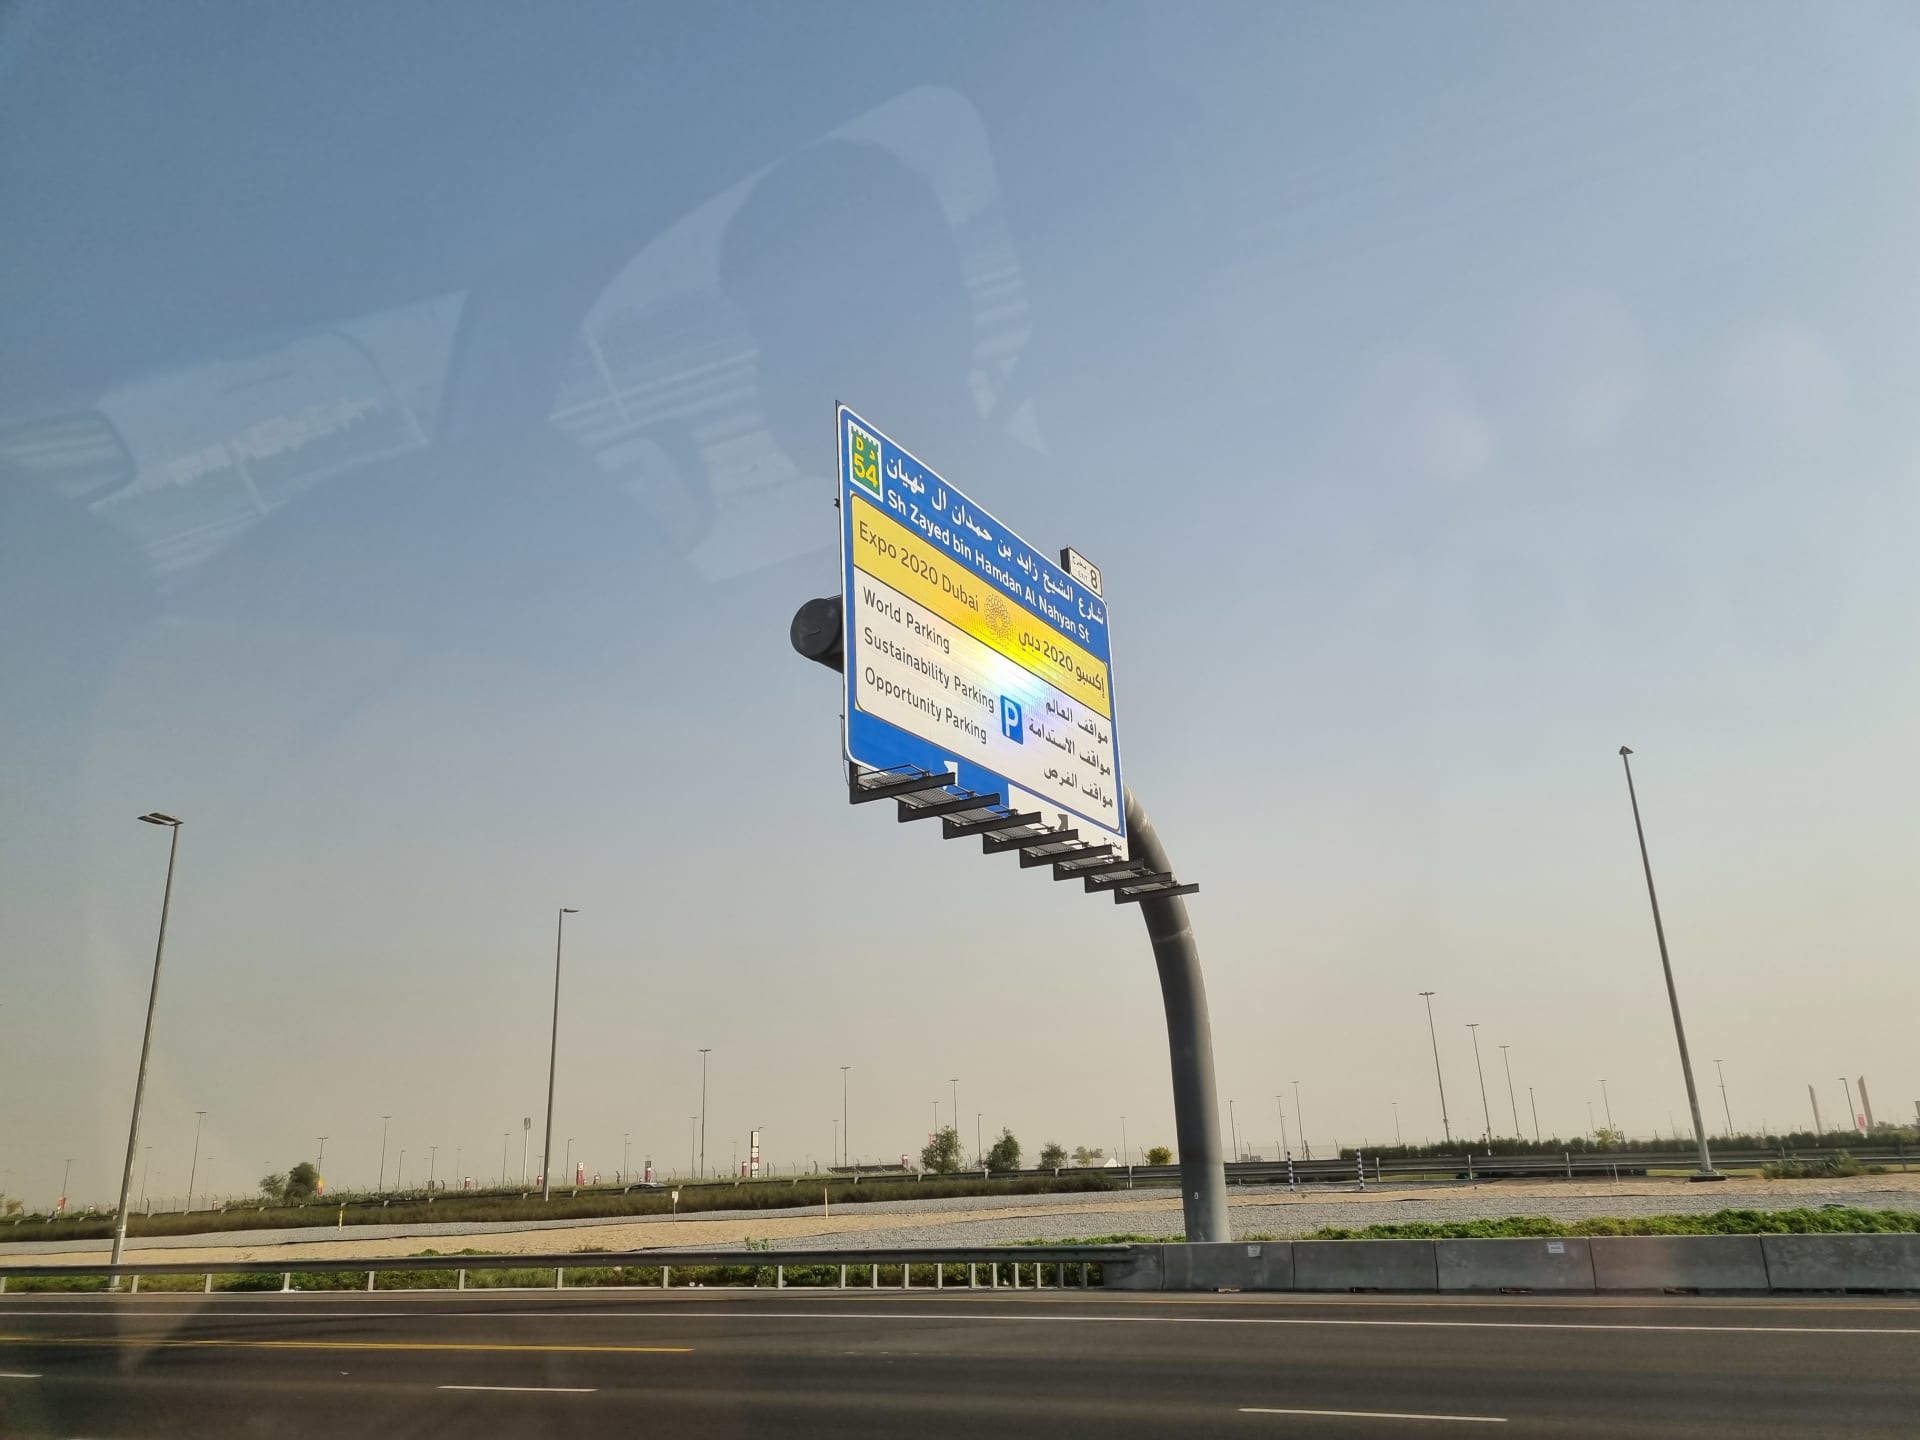 Reklamy na Expo 2020 jsou v Dubaji na každém kroku.